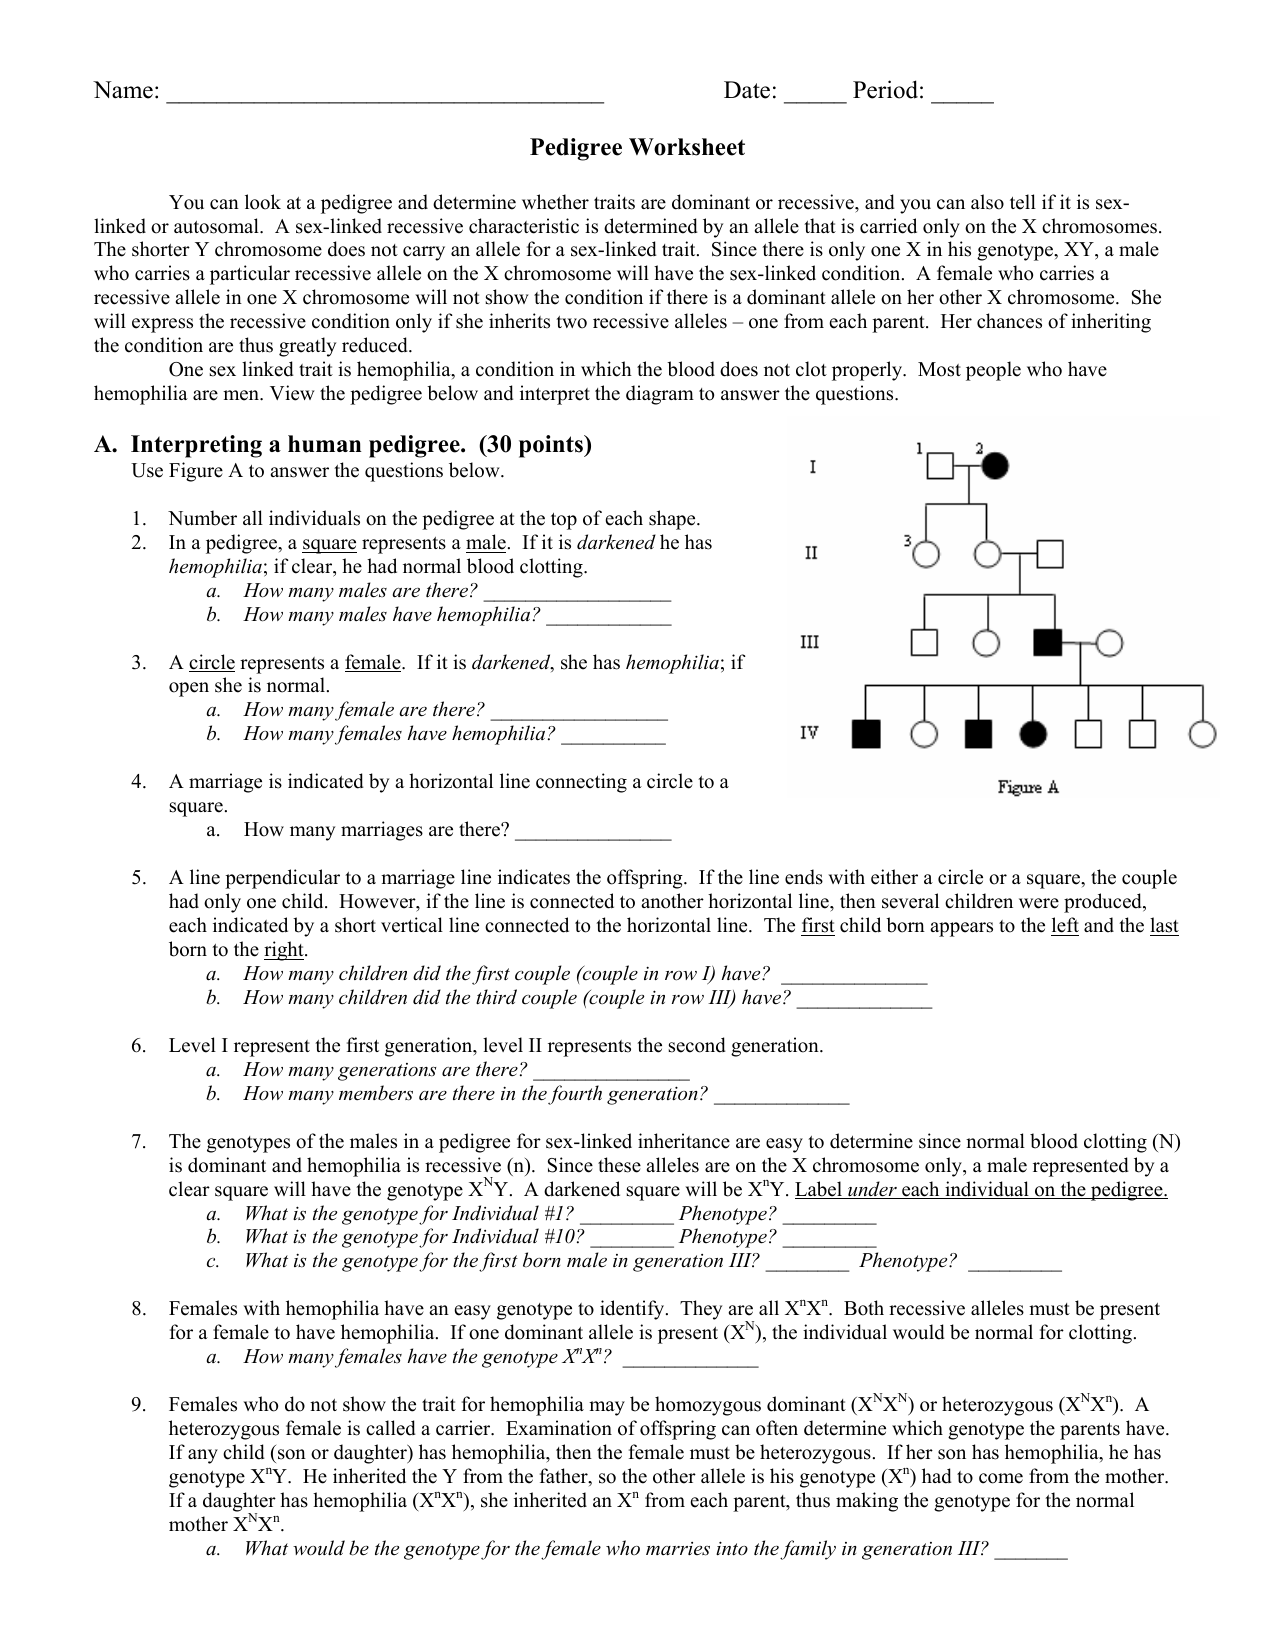 Pedigree Worksheet 22 Within Genetics Pedigree Worksheet Answers